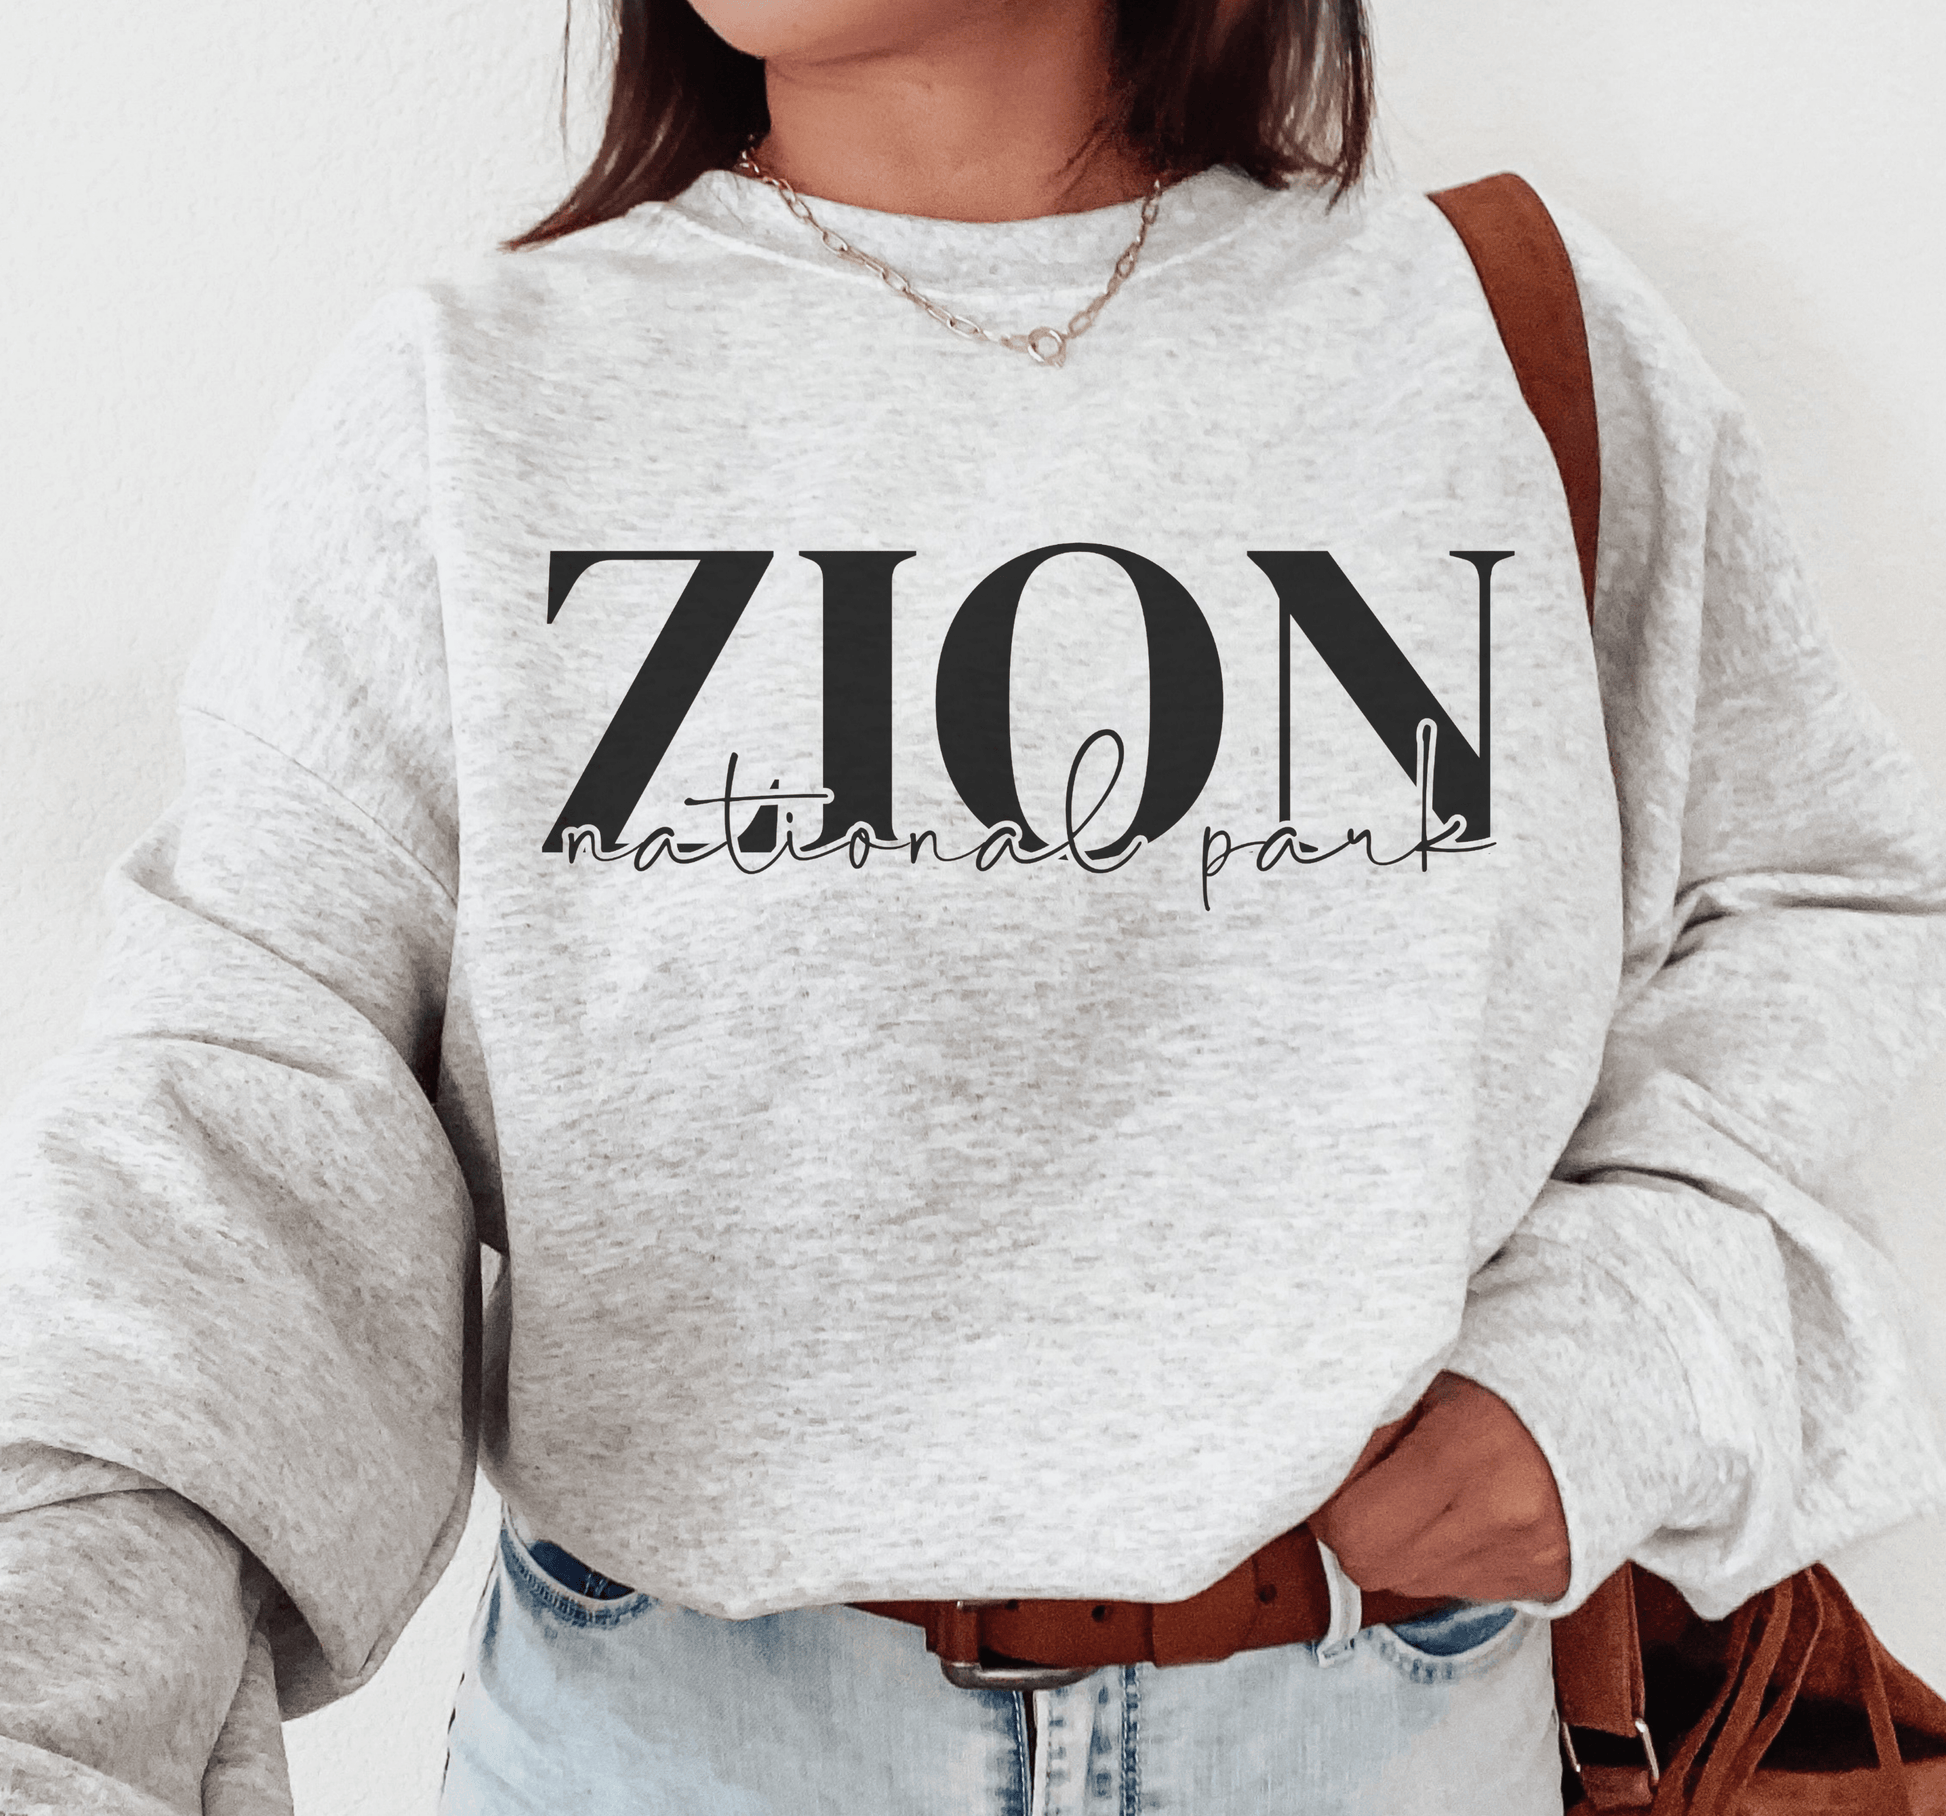 Zion National Park Sweatshirt - BentleyBlueCo